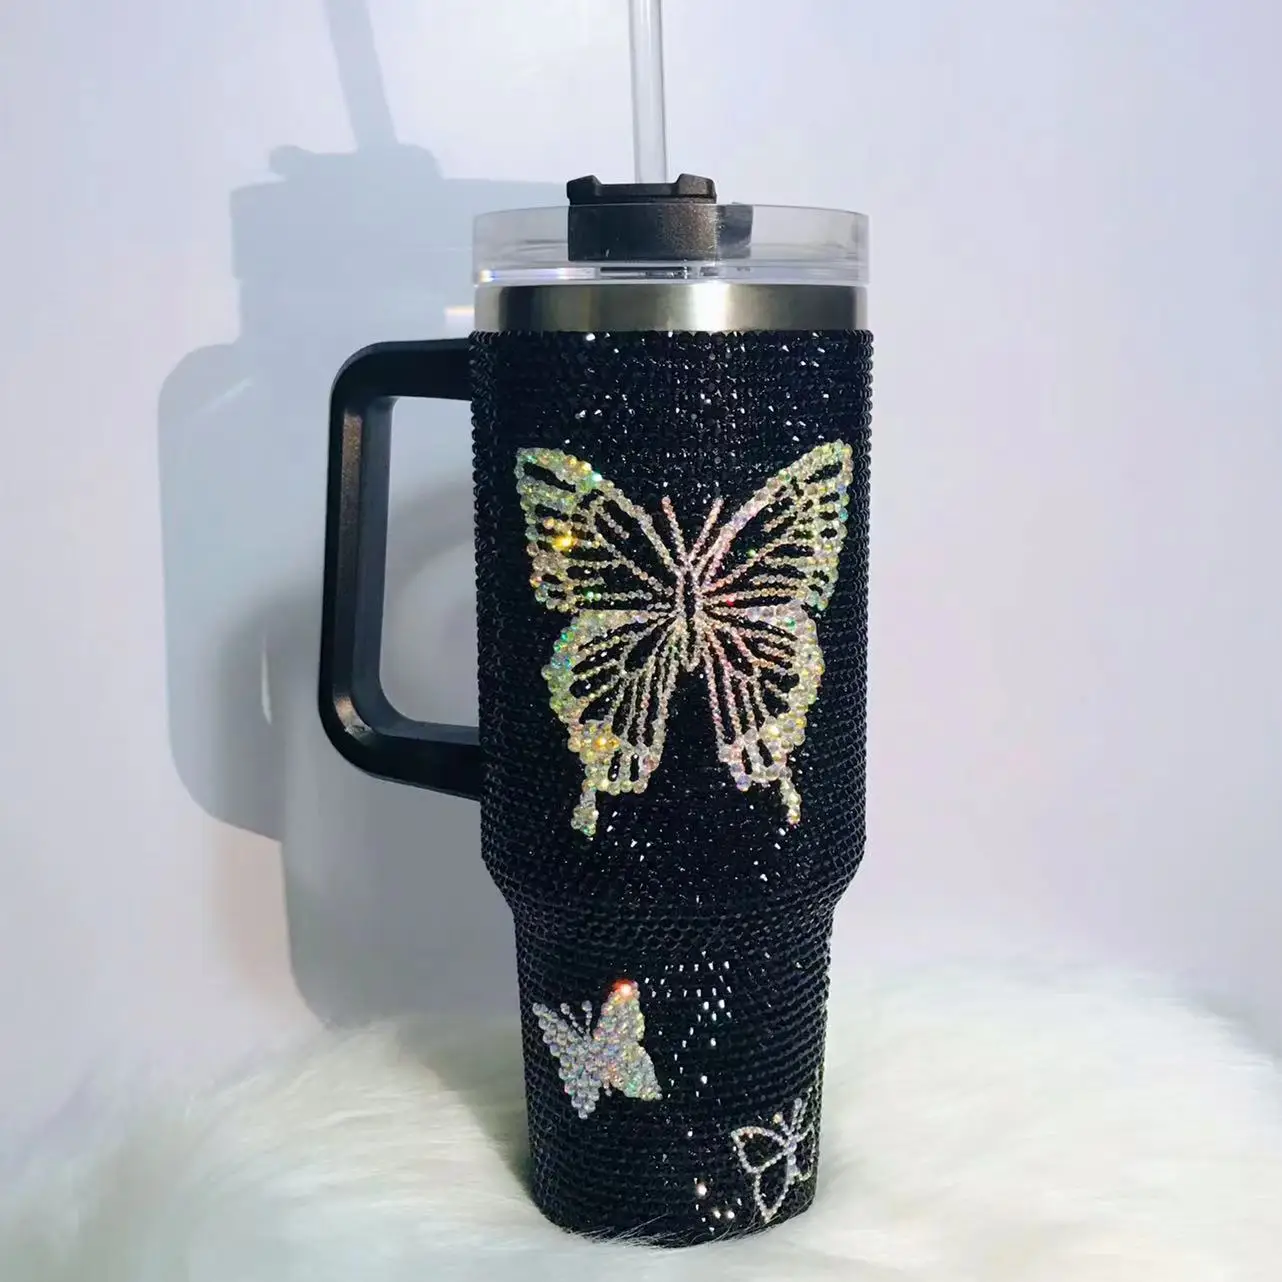 40oz Rhinestone Embellished Coffee Mug Stylish Luxury with Handle Lid Straw Tumbler Drinkware Thermos Stainless Steel Vacuum Cuporange Diamond, Size